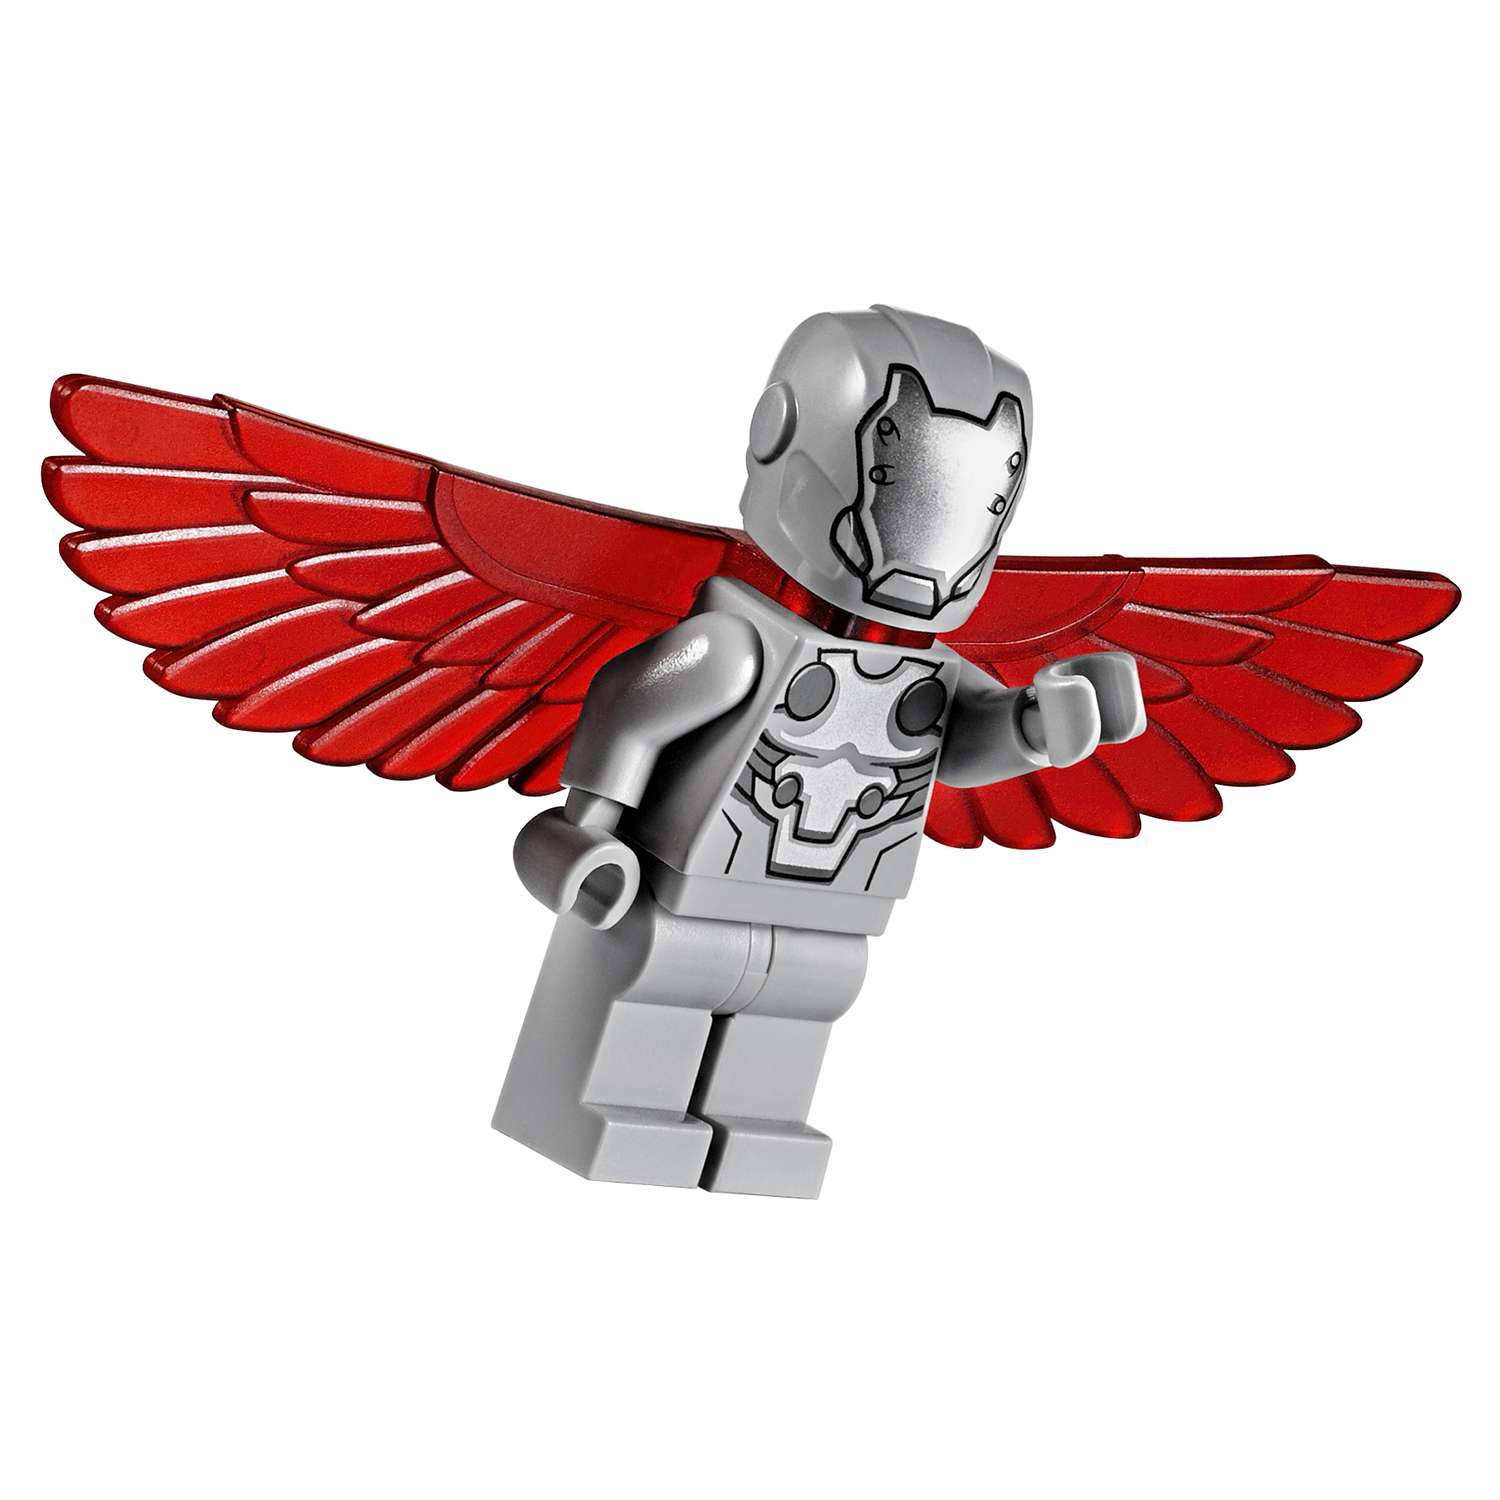 Конструктор LEGO Super Heroes Воздушная погоня Капитана Америка (76076) - фото 13